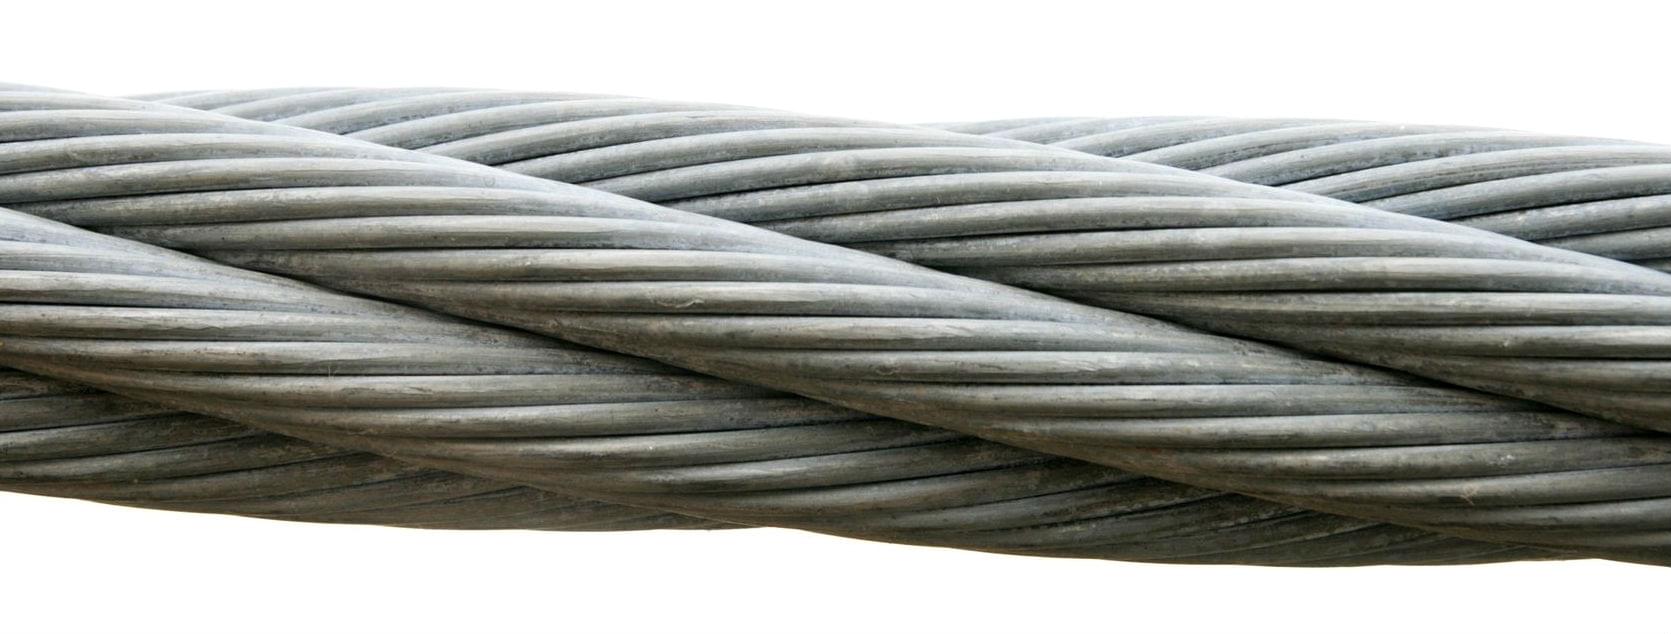 Mining steel rope